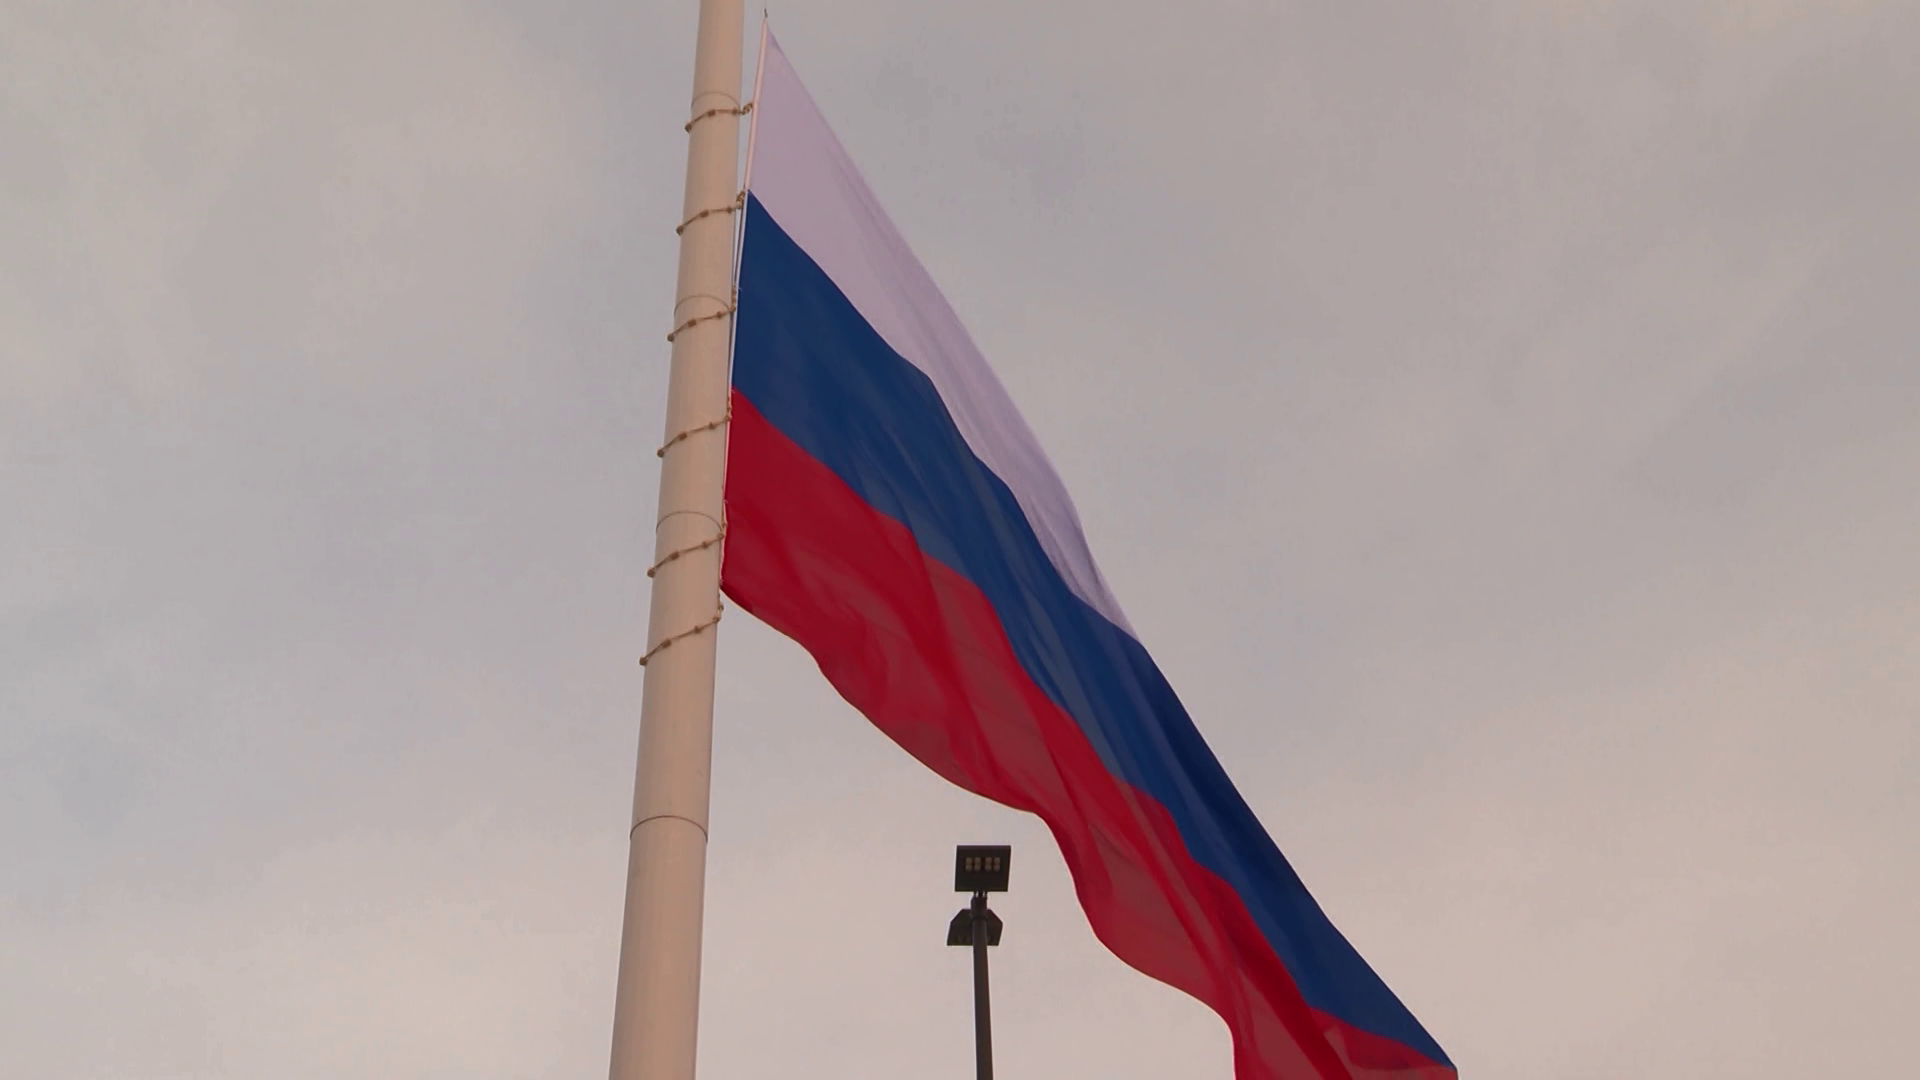 Флаг России в небе